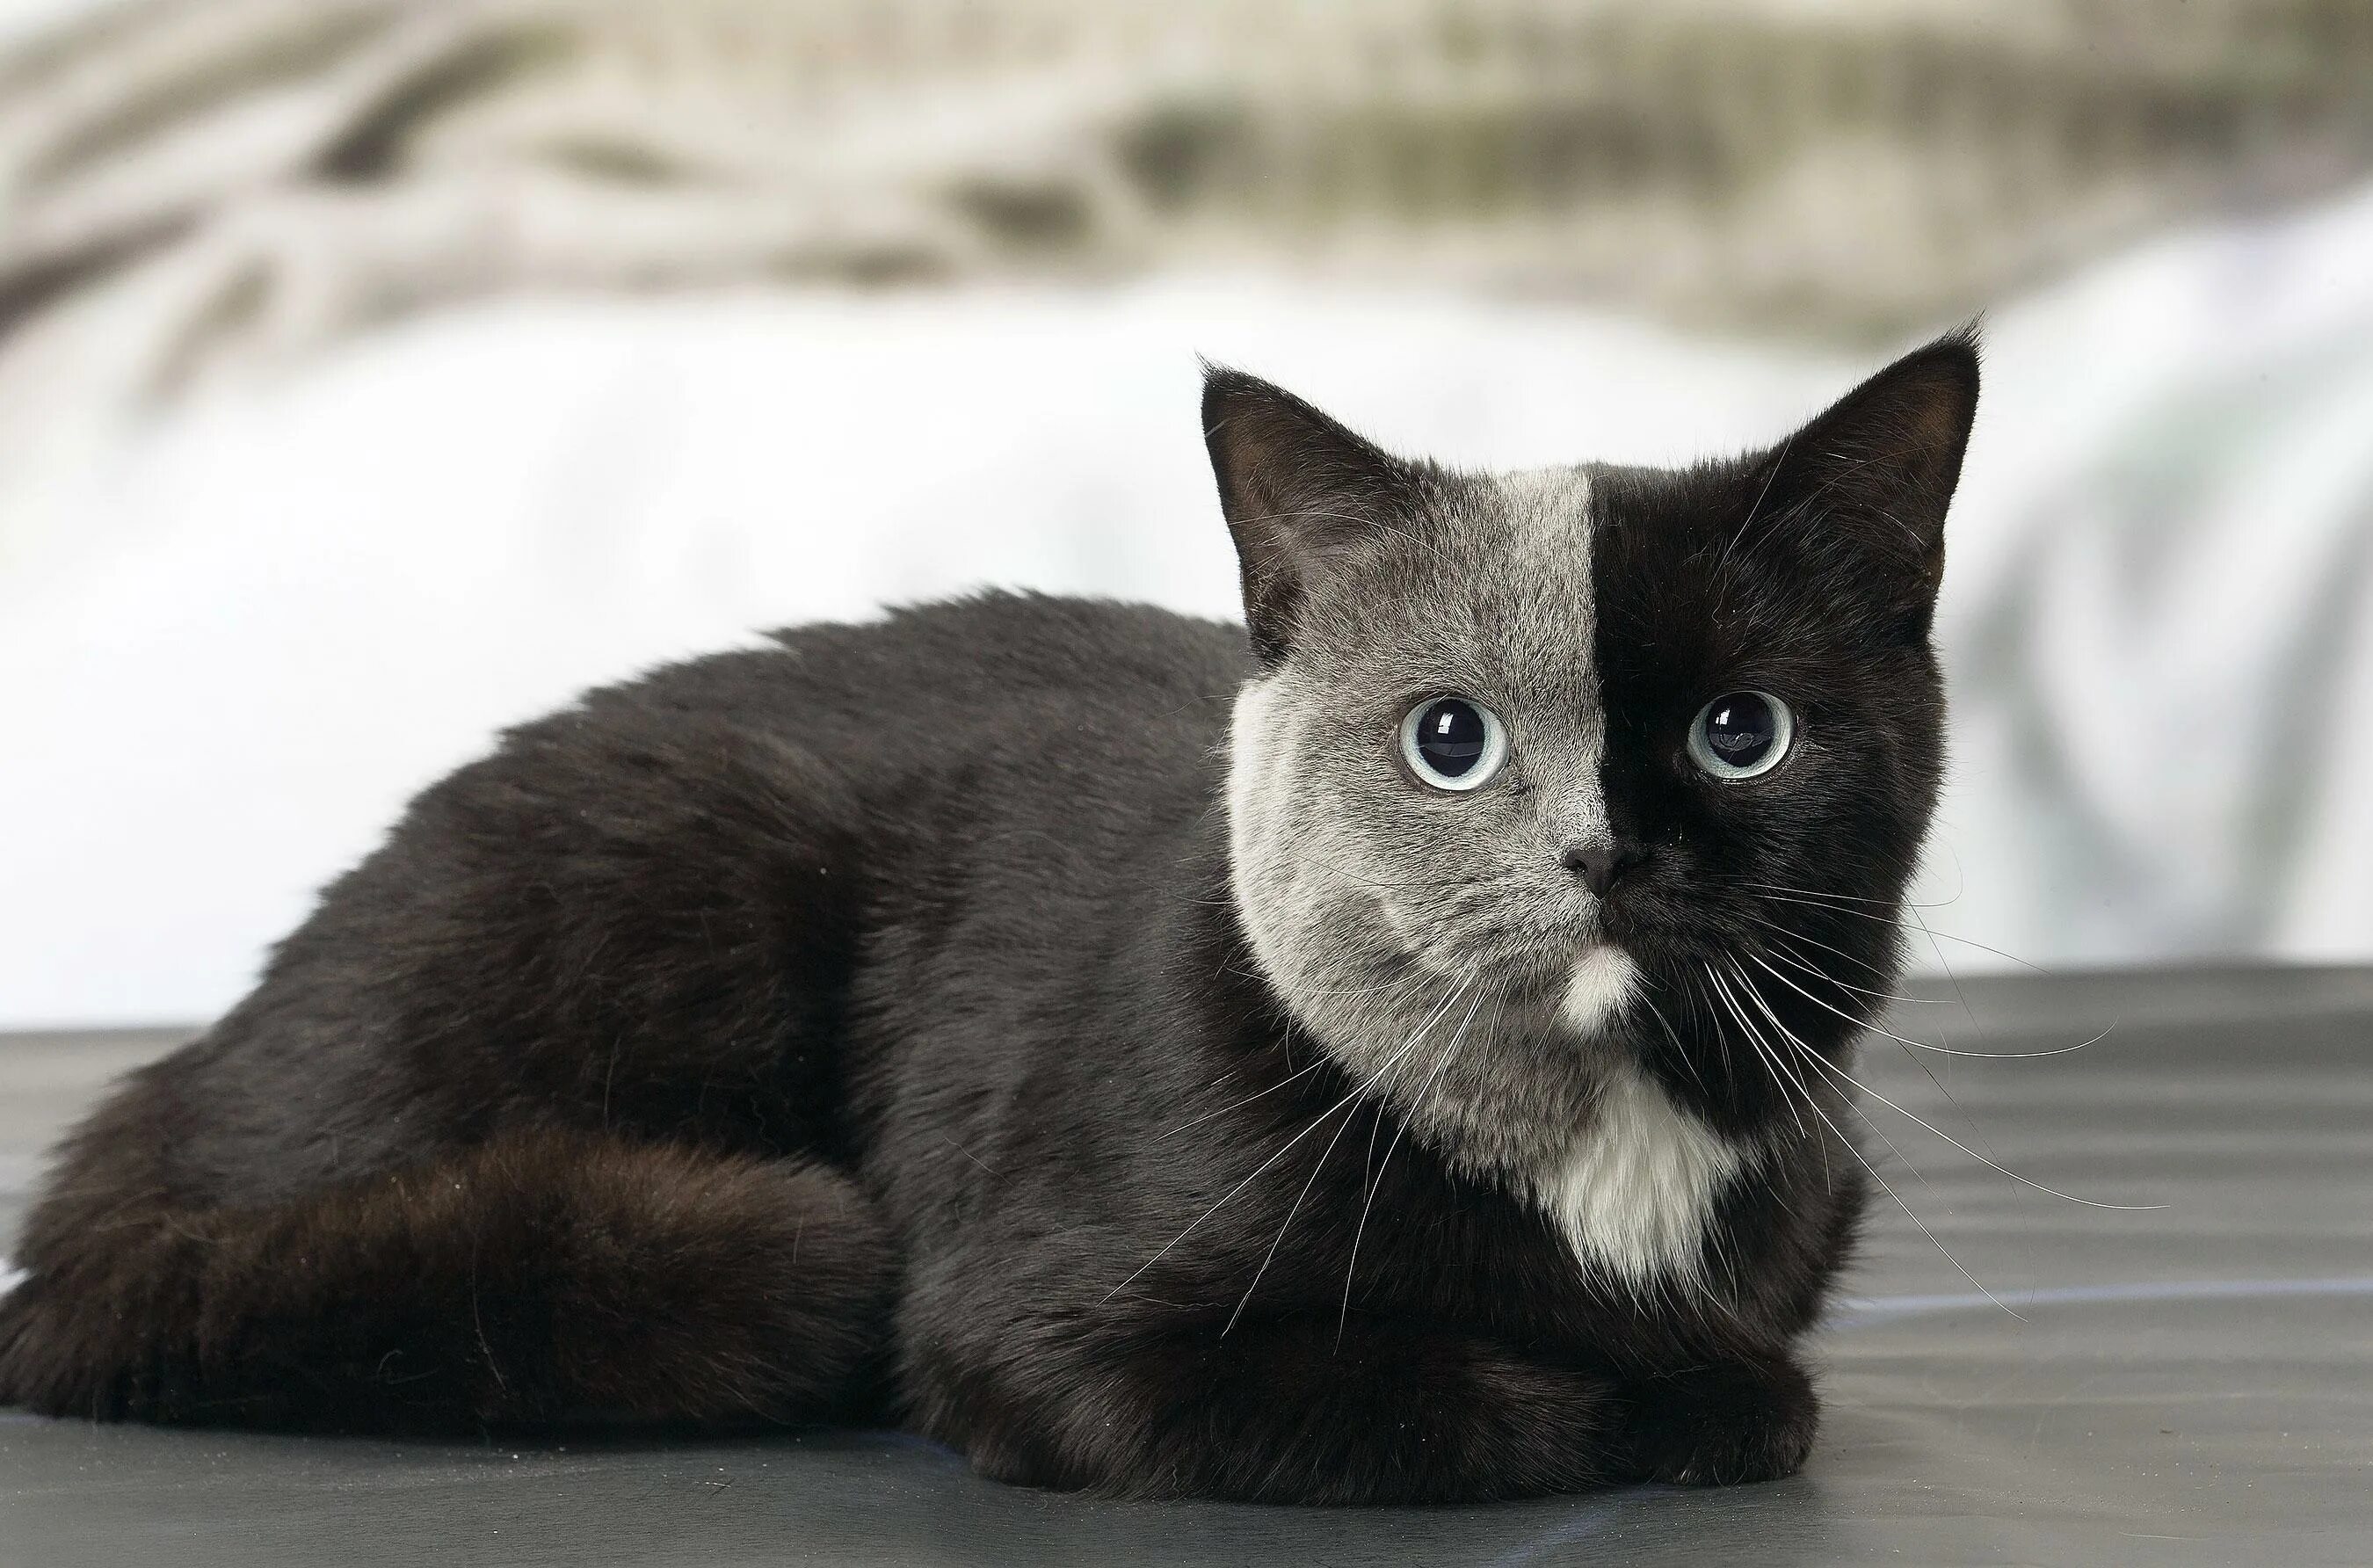 Породы кошек черно серого окраса. Британский короткошерстный кот биколор. Британская короткошёрстная кошка черная. Кошки породы Химера. Двуликая кошка Нарния.